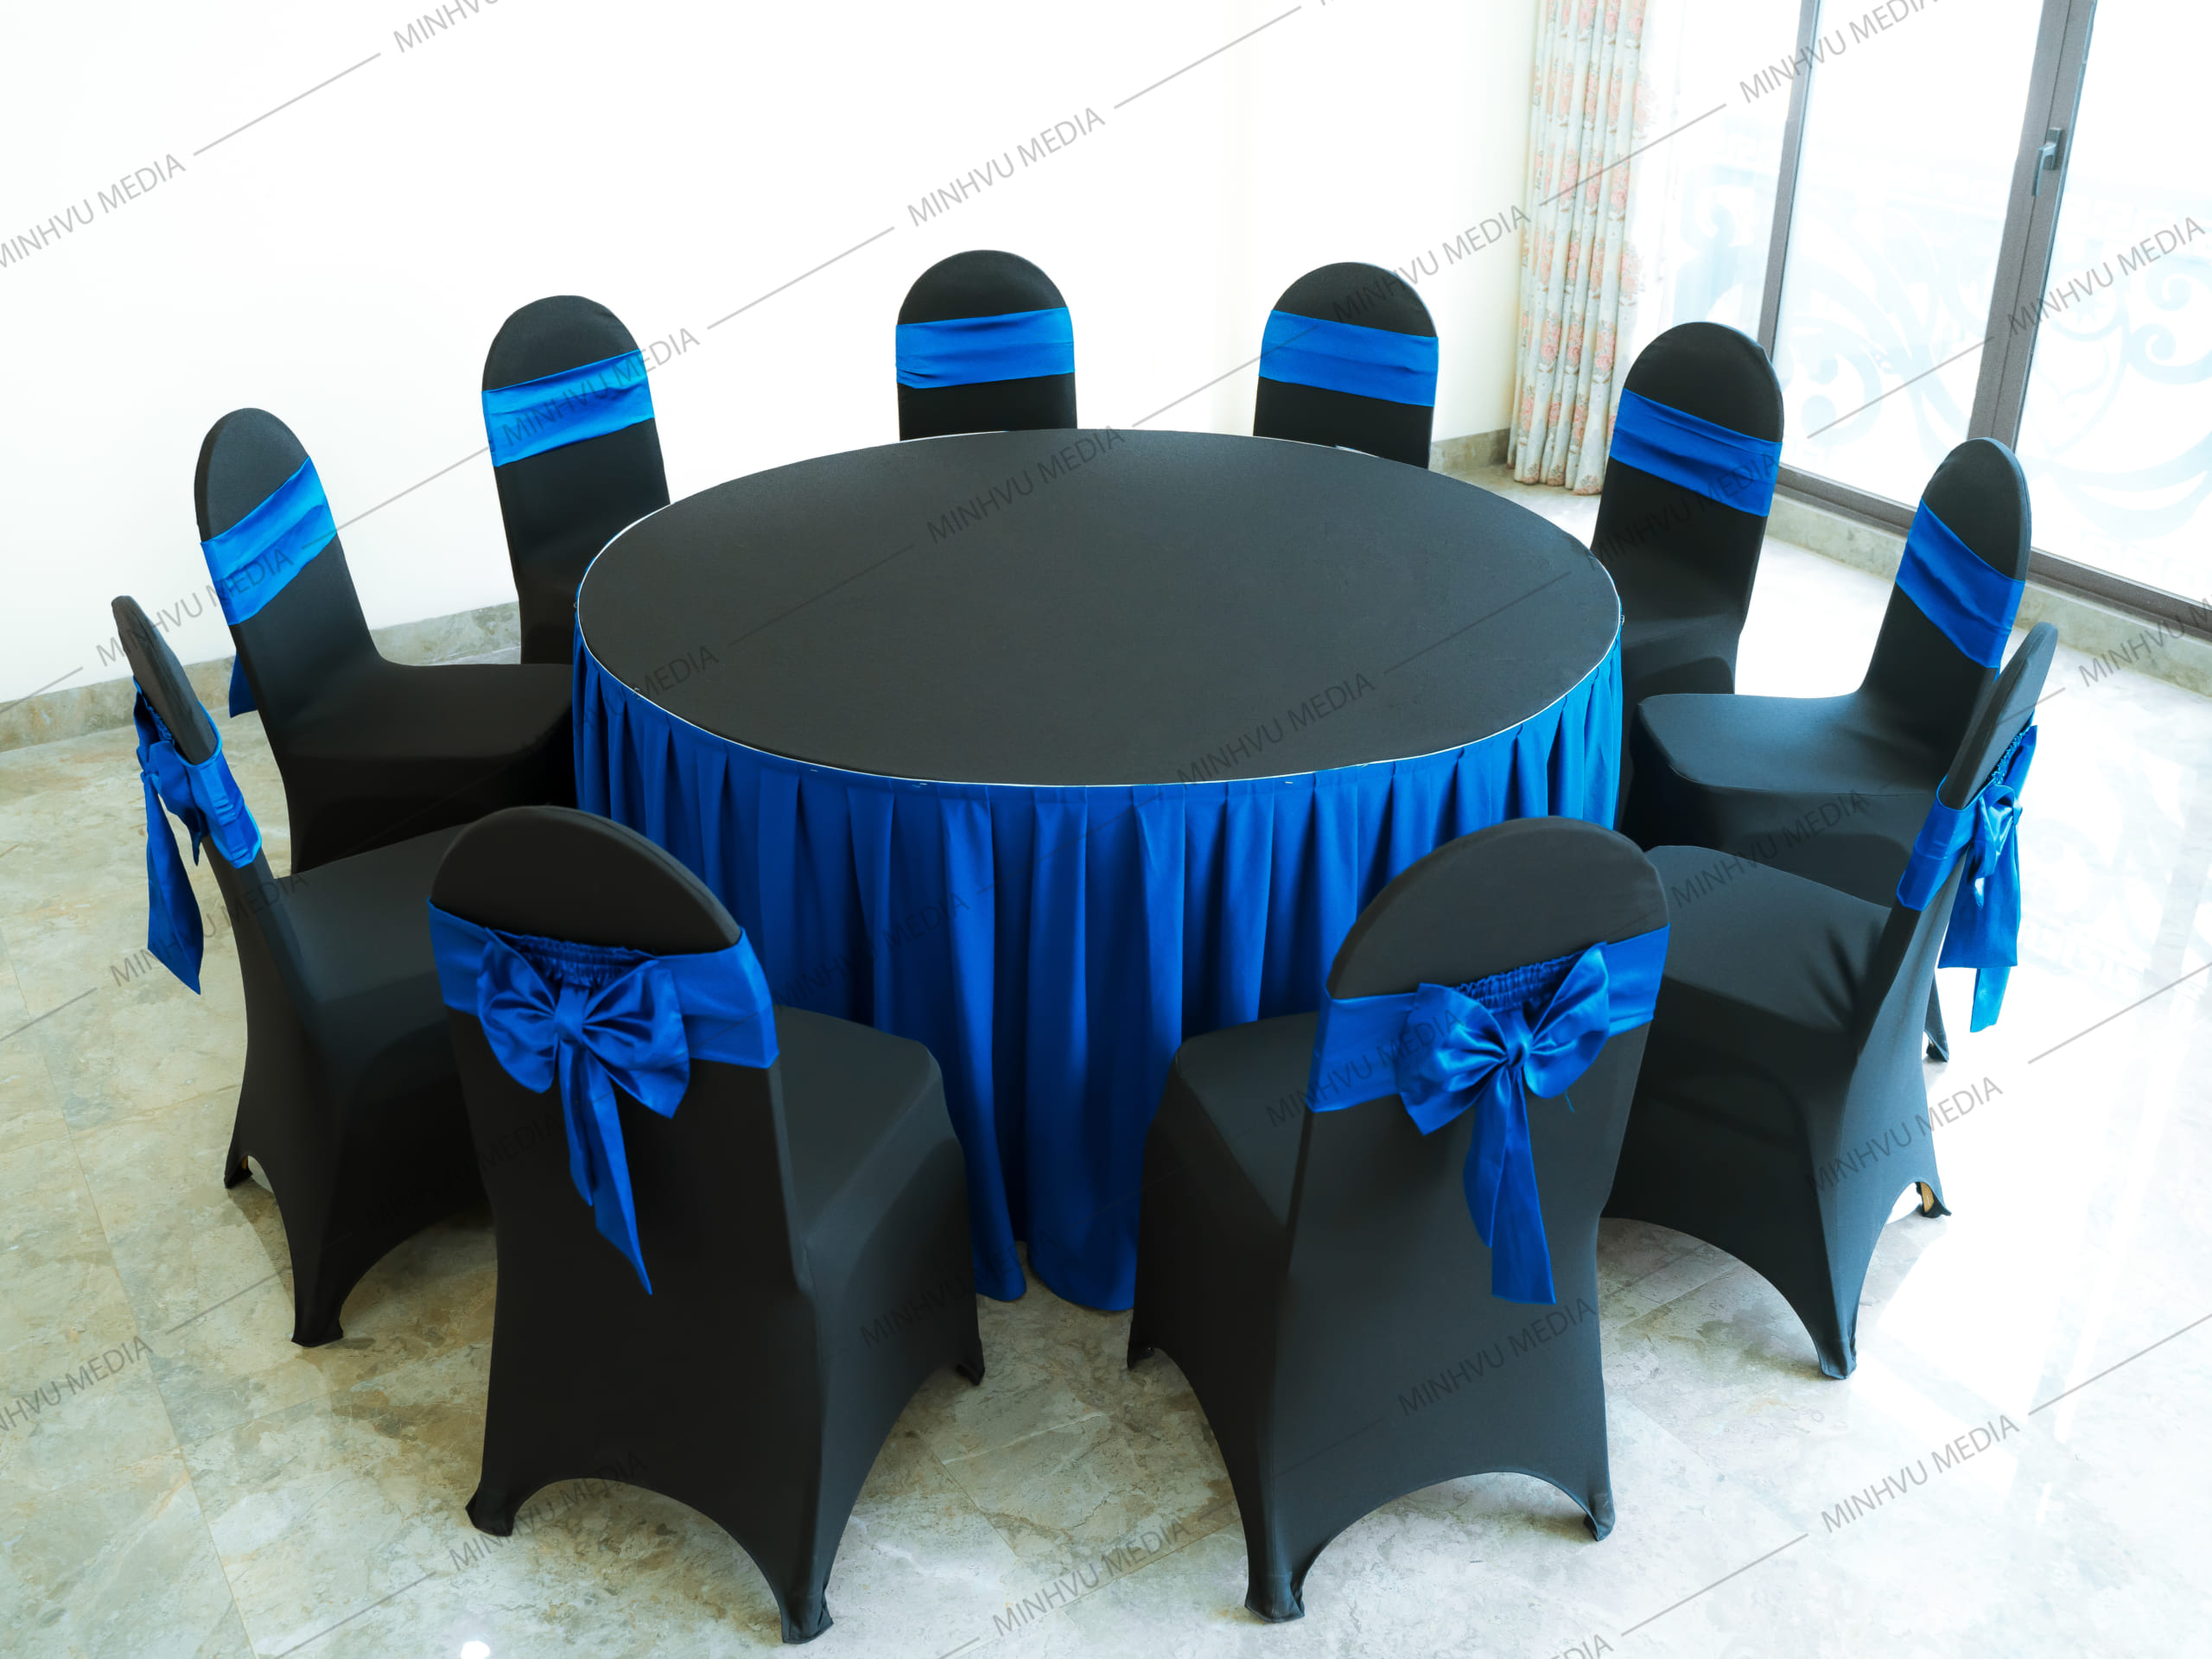 Ghế không gập Xuân Hoà kết hợp bàn tròn khăn phủ đen - xanh dương